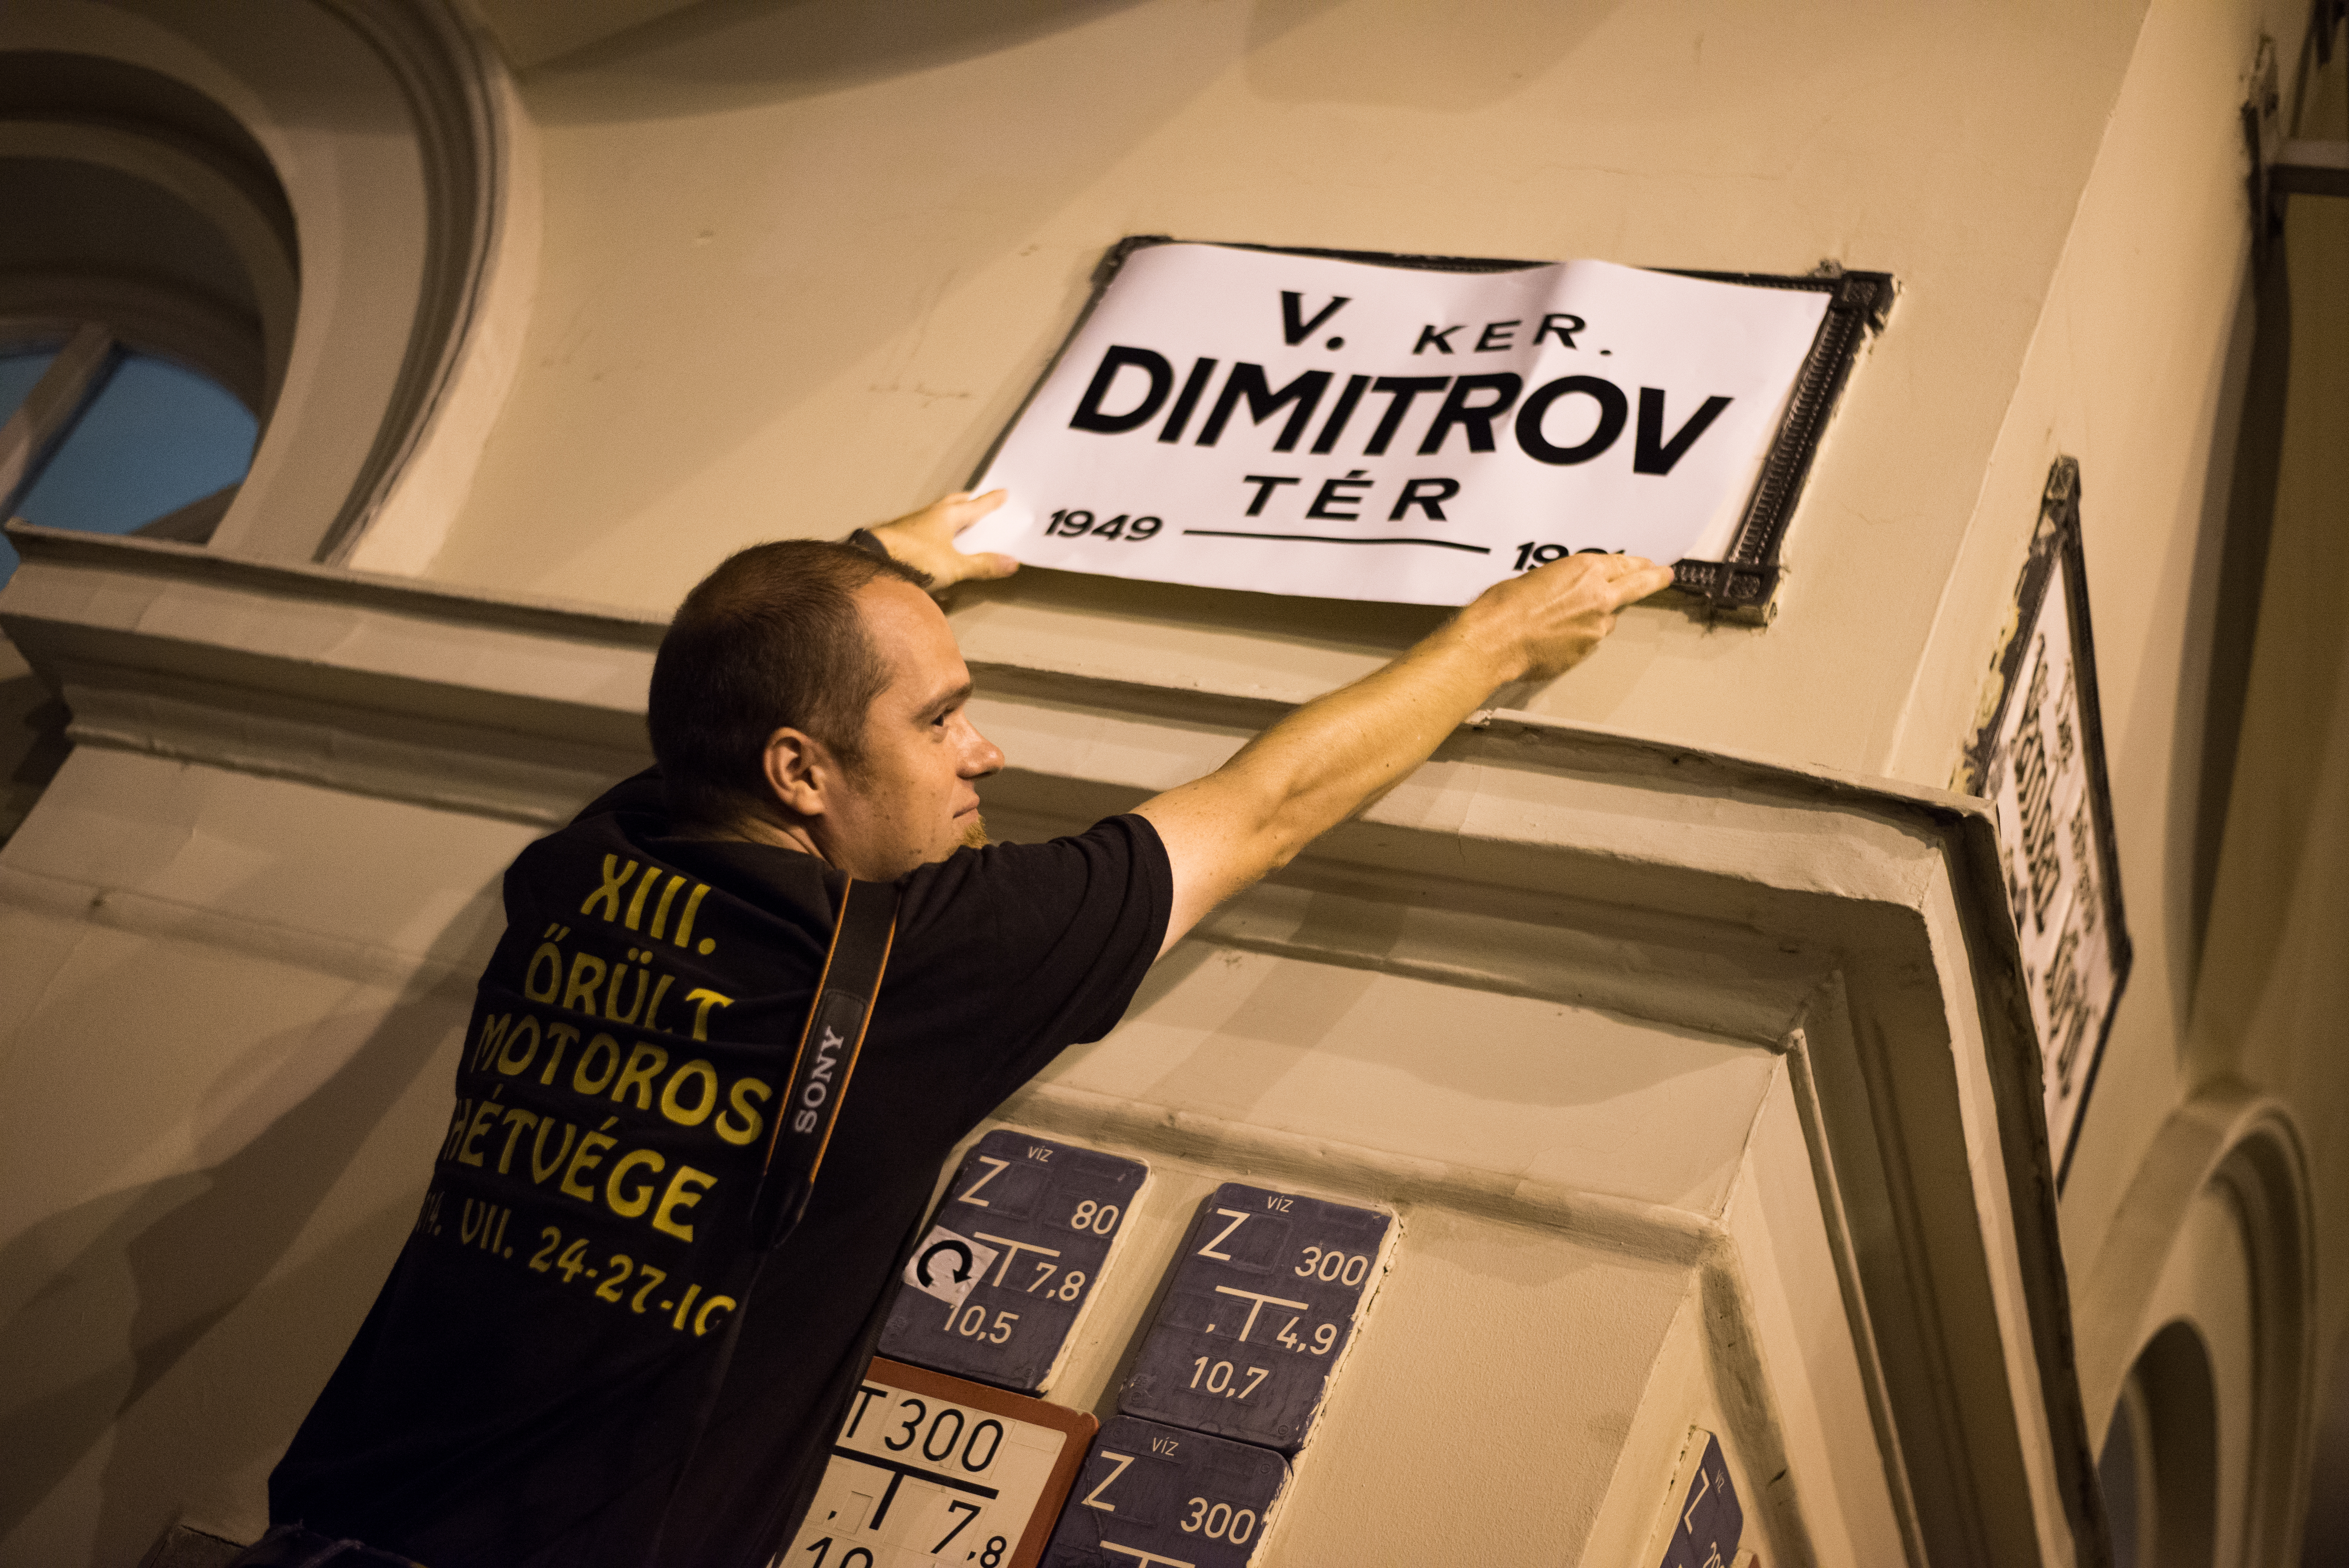 A Fővám tér visszakapta a Dimitrov nevet.